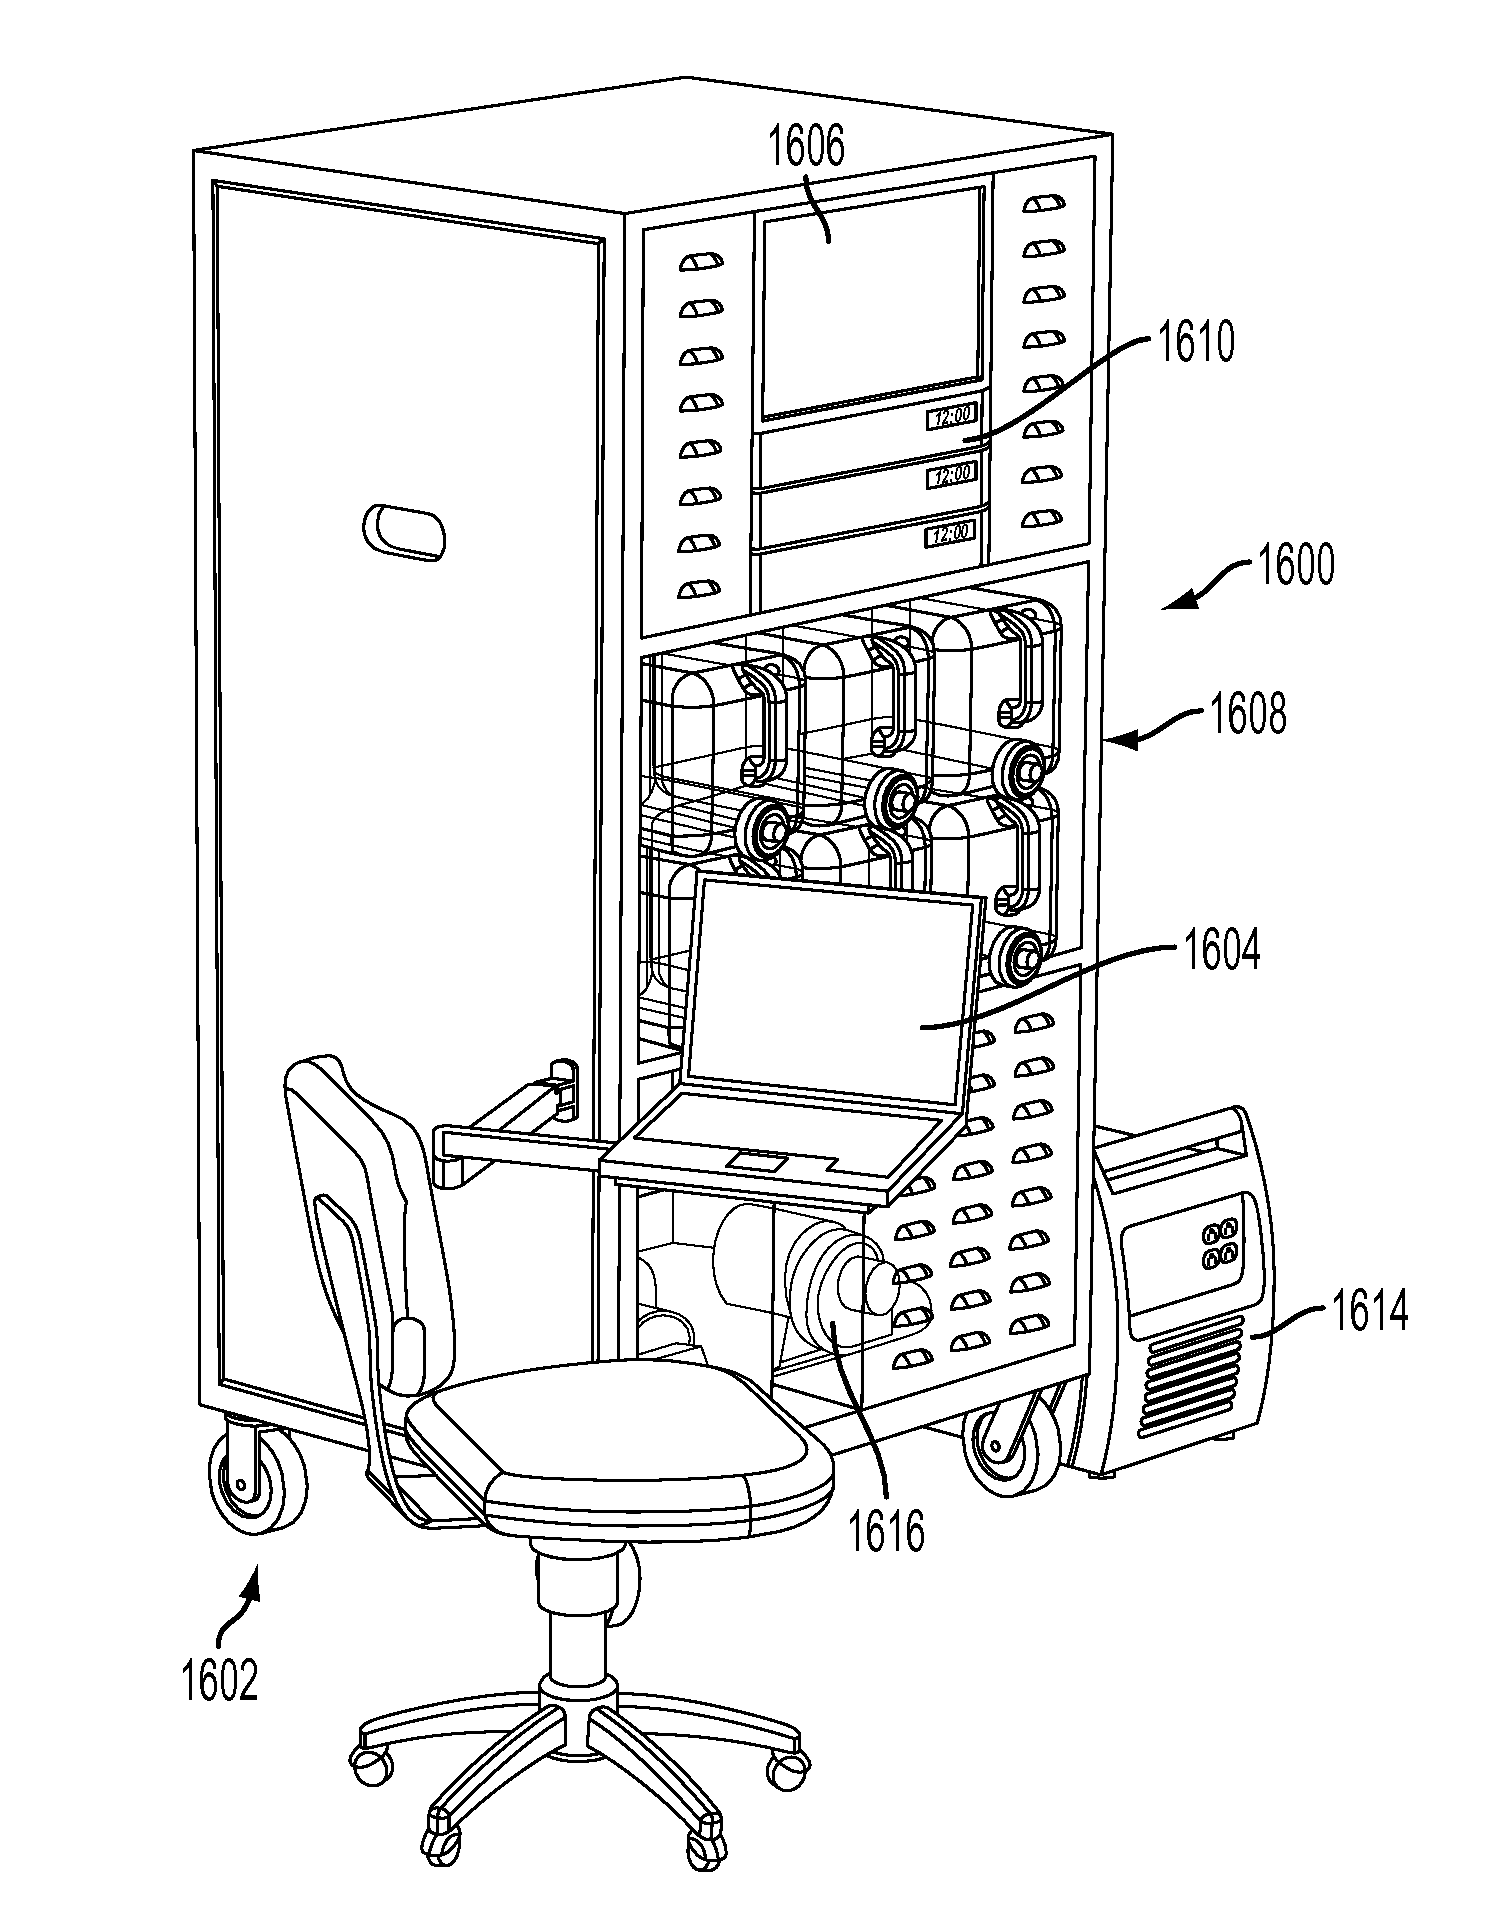 Decontamination apparatus